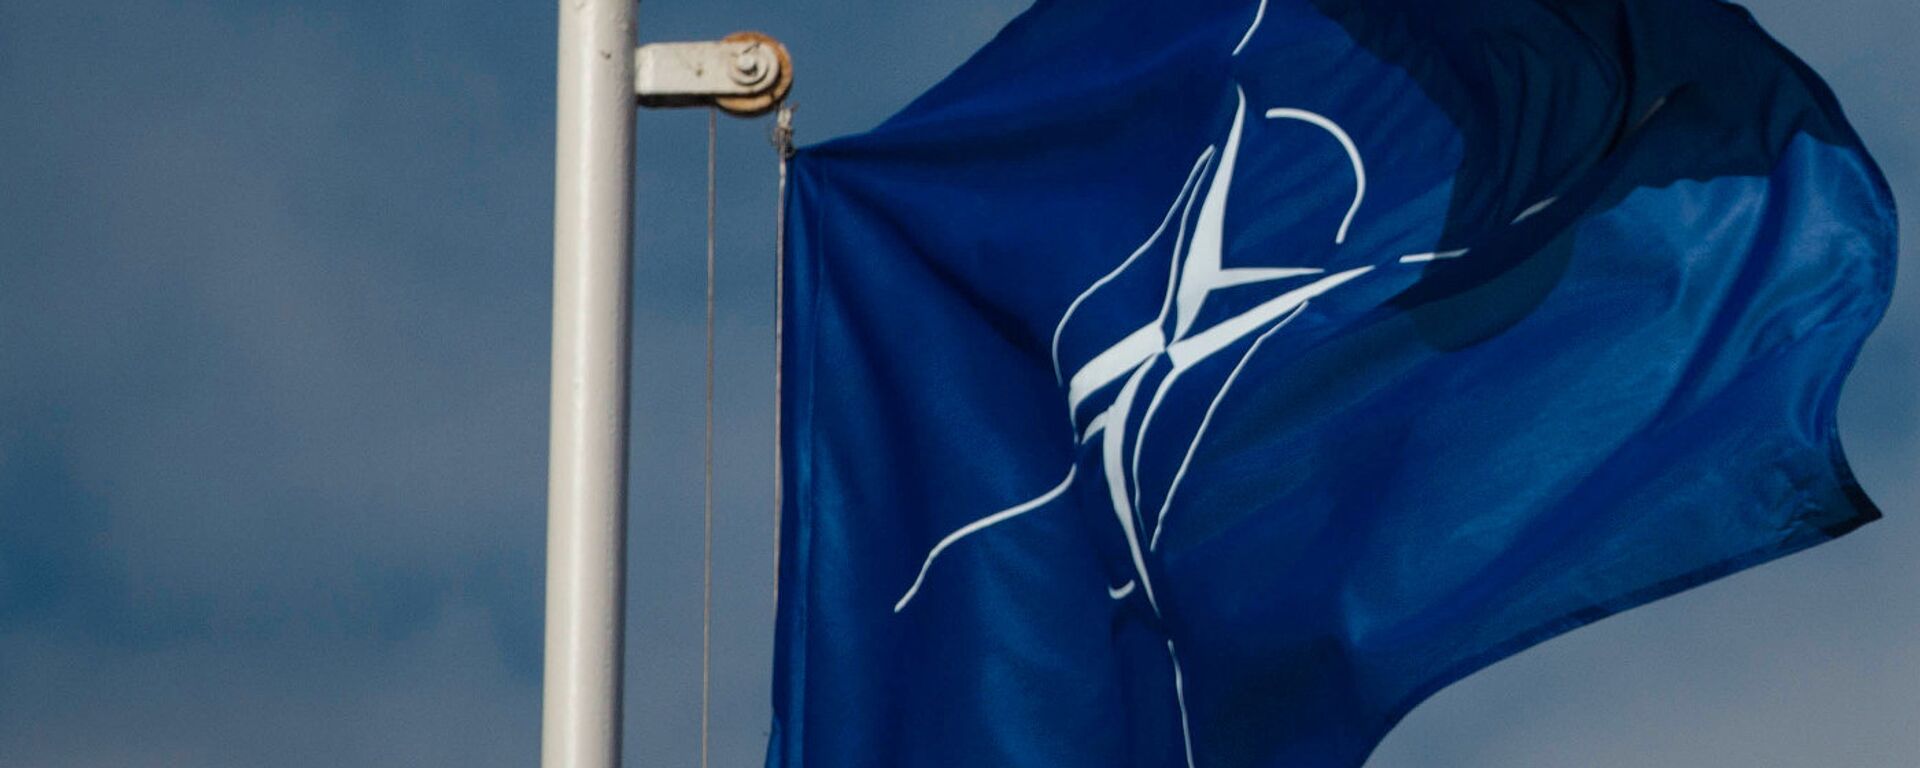 Флаг Организации Североатлантического договора (НАТО) - Sputnik Ўзбекистон, 1920, 19.10.2021